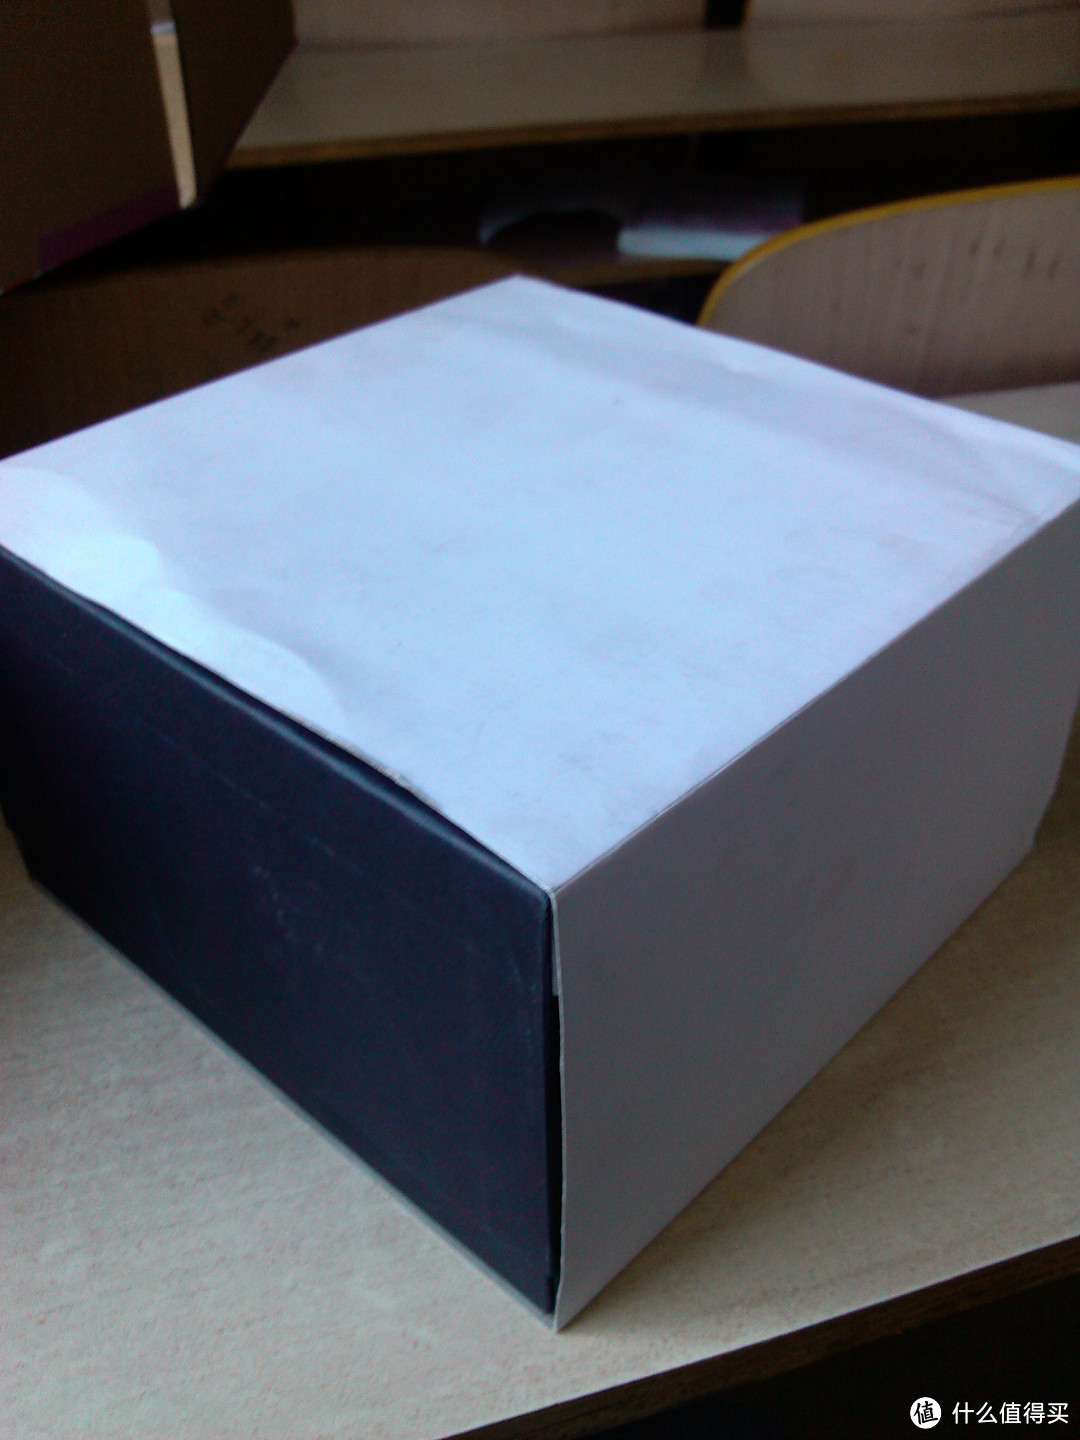 打开箱子是一个备受我嫌弃的白盒子